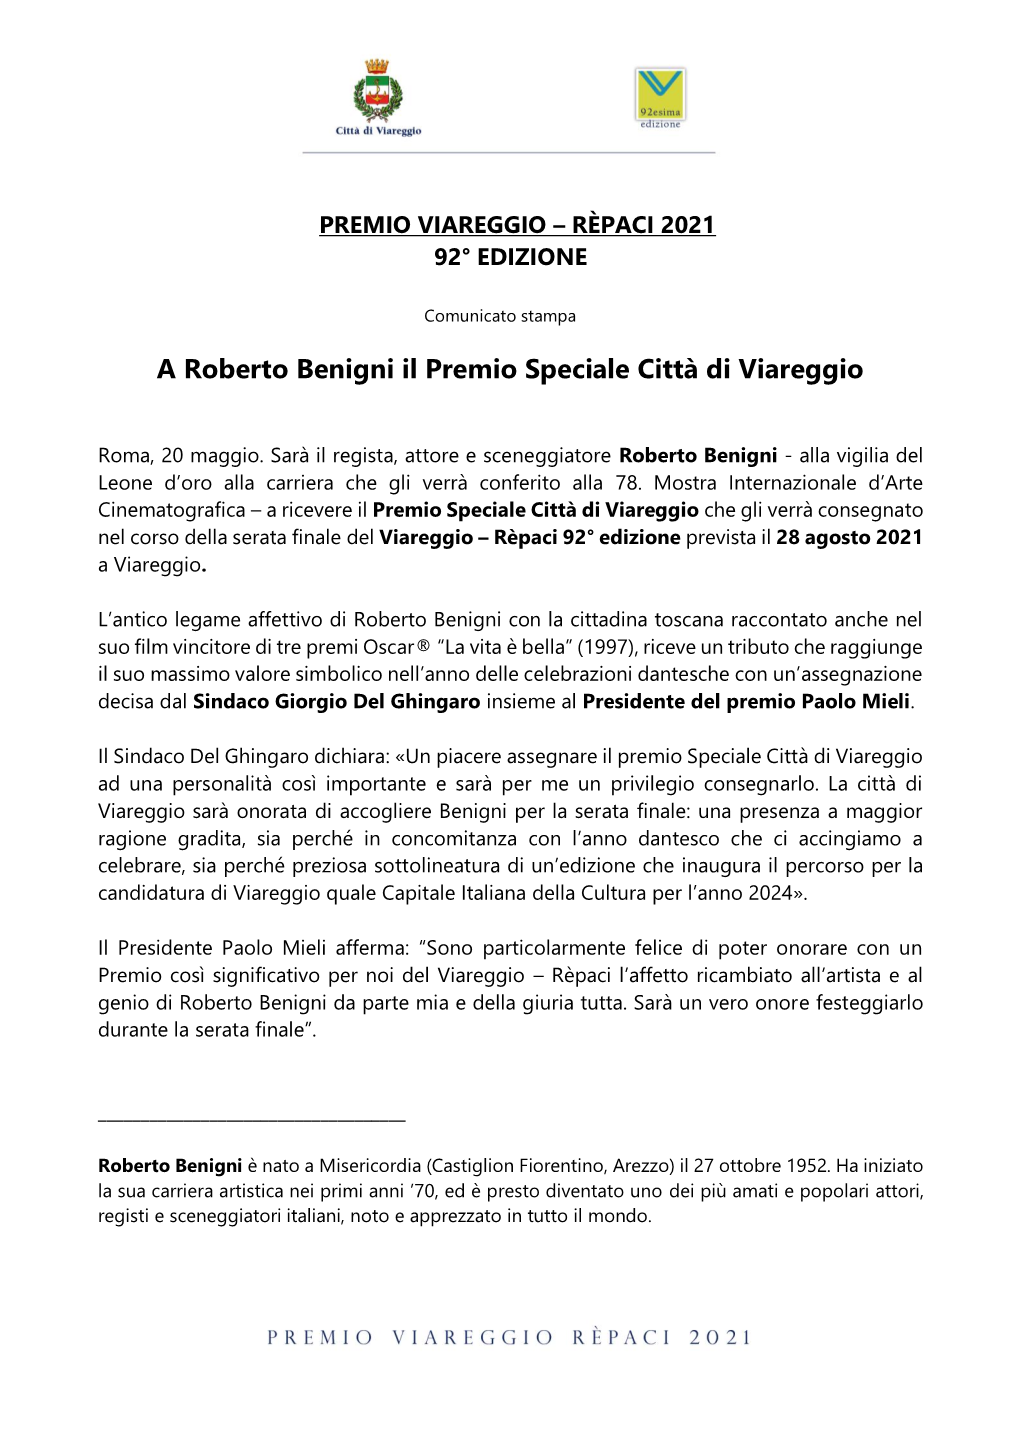 A Roberto Benigni Il Premio Speciale Città Di Viareggio